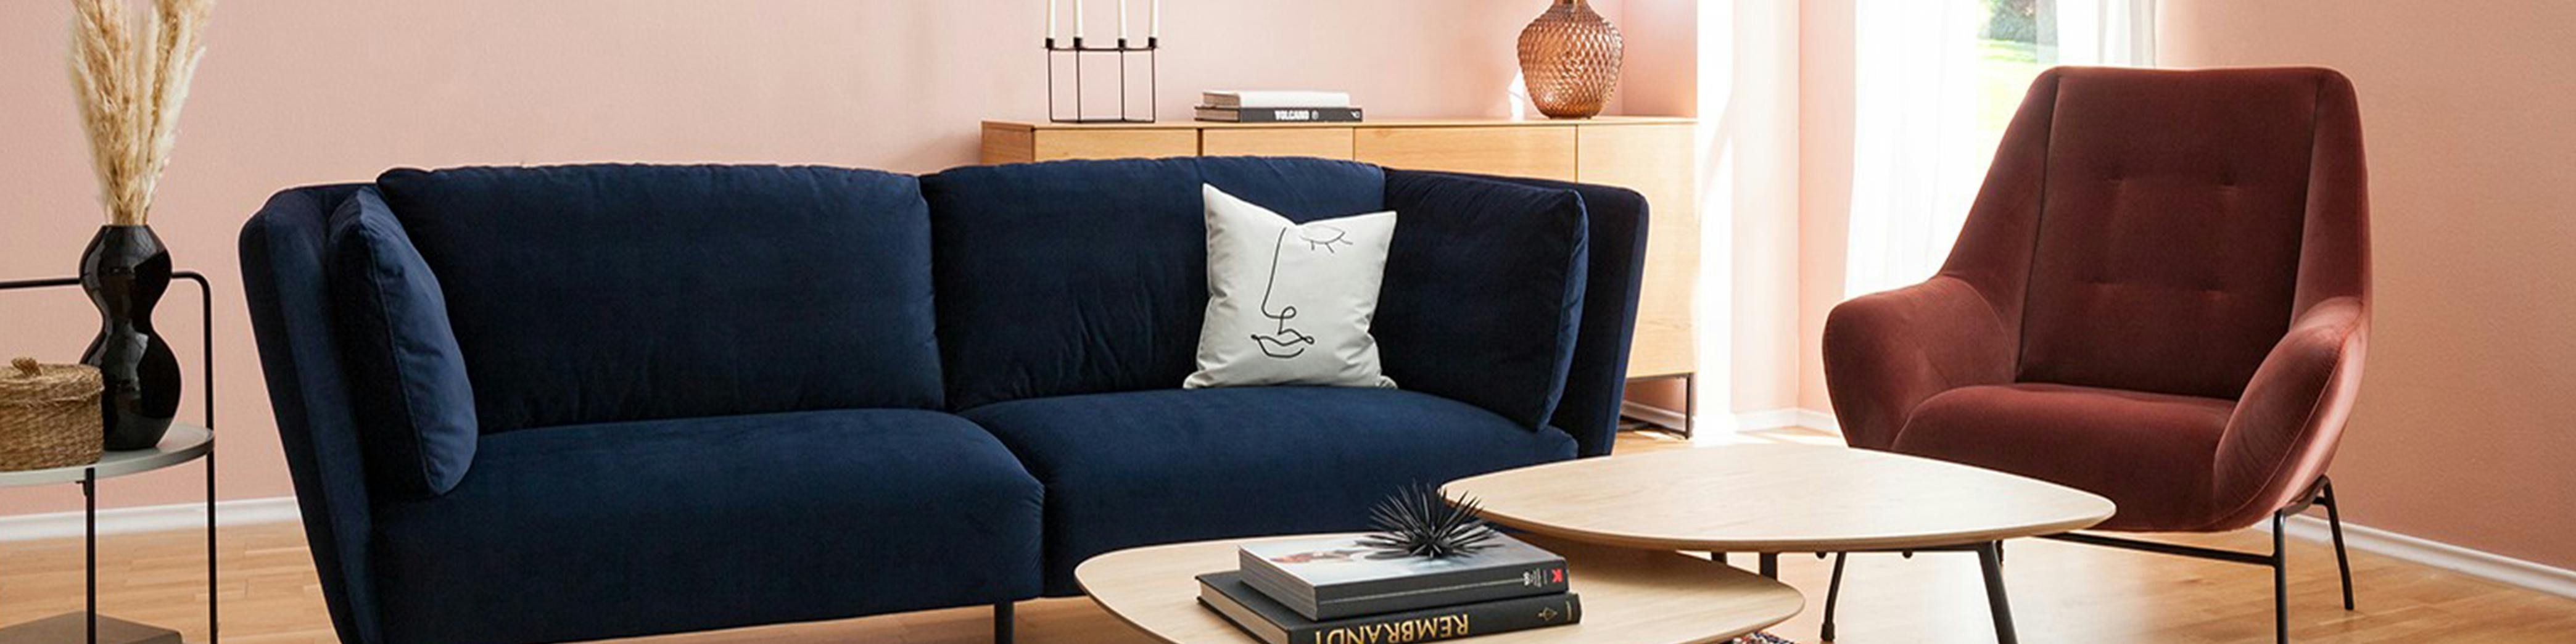 Blaues Samtsofa im Wohnzimmer mit Couchtisch aus Holz und gepolstertem Sessel kombiniert